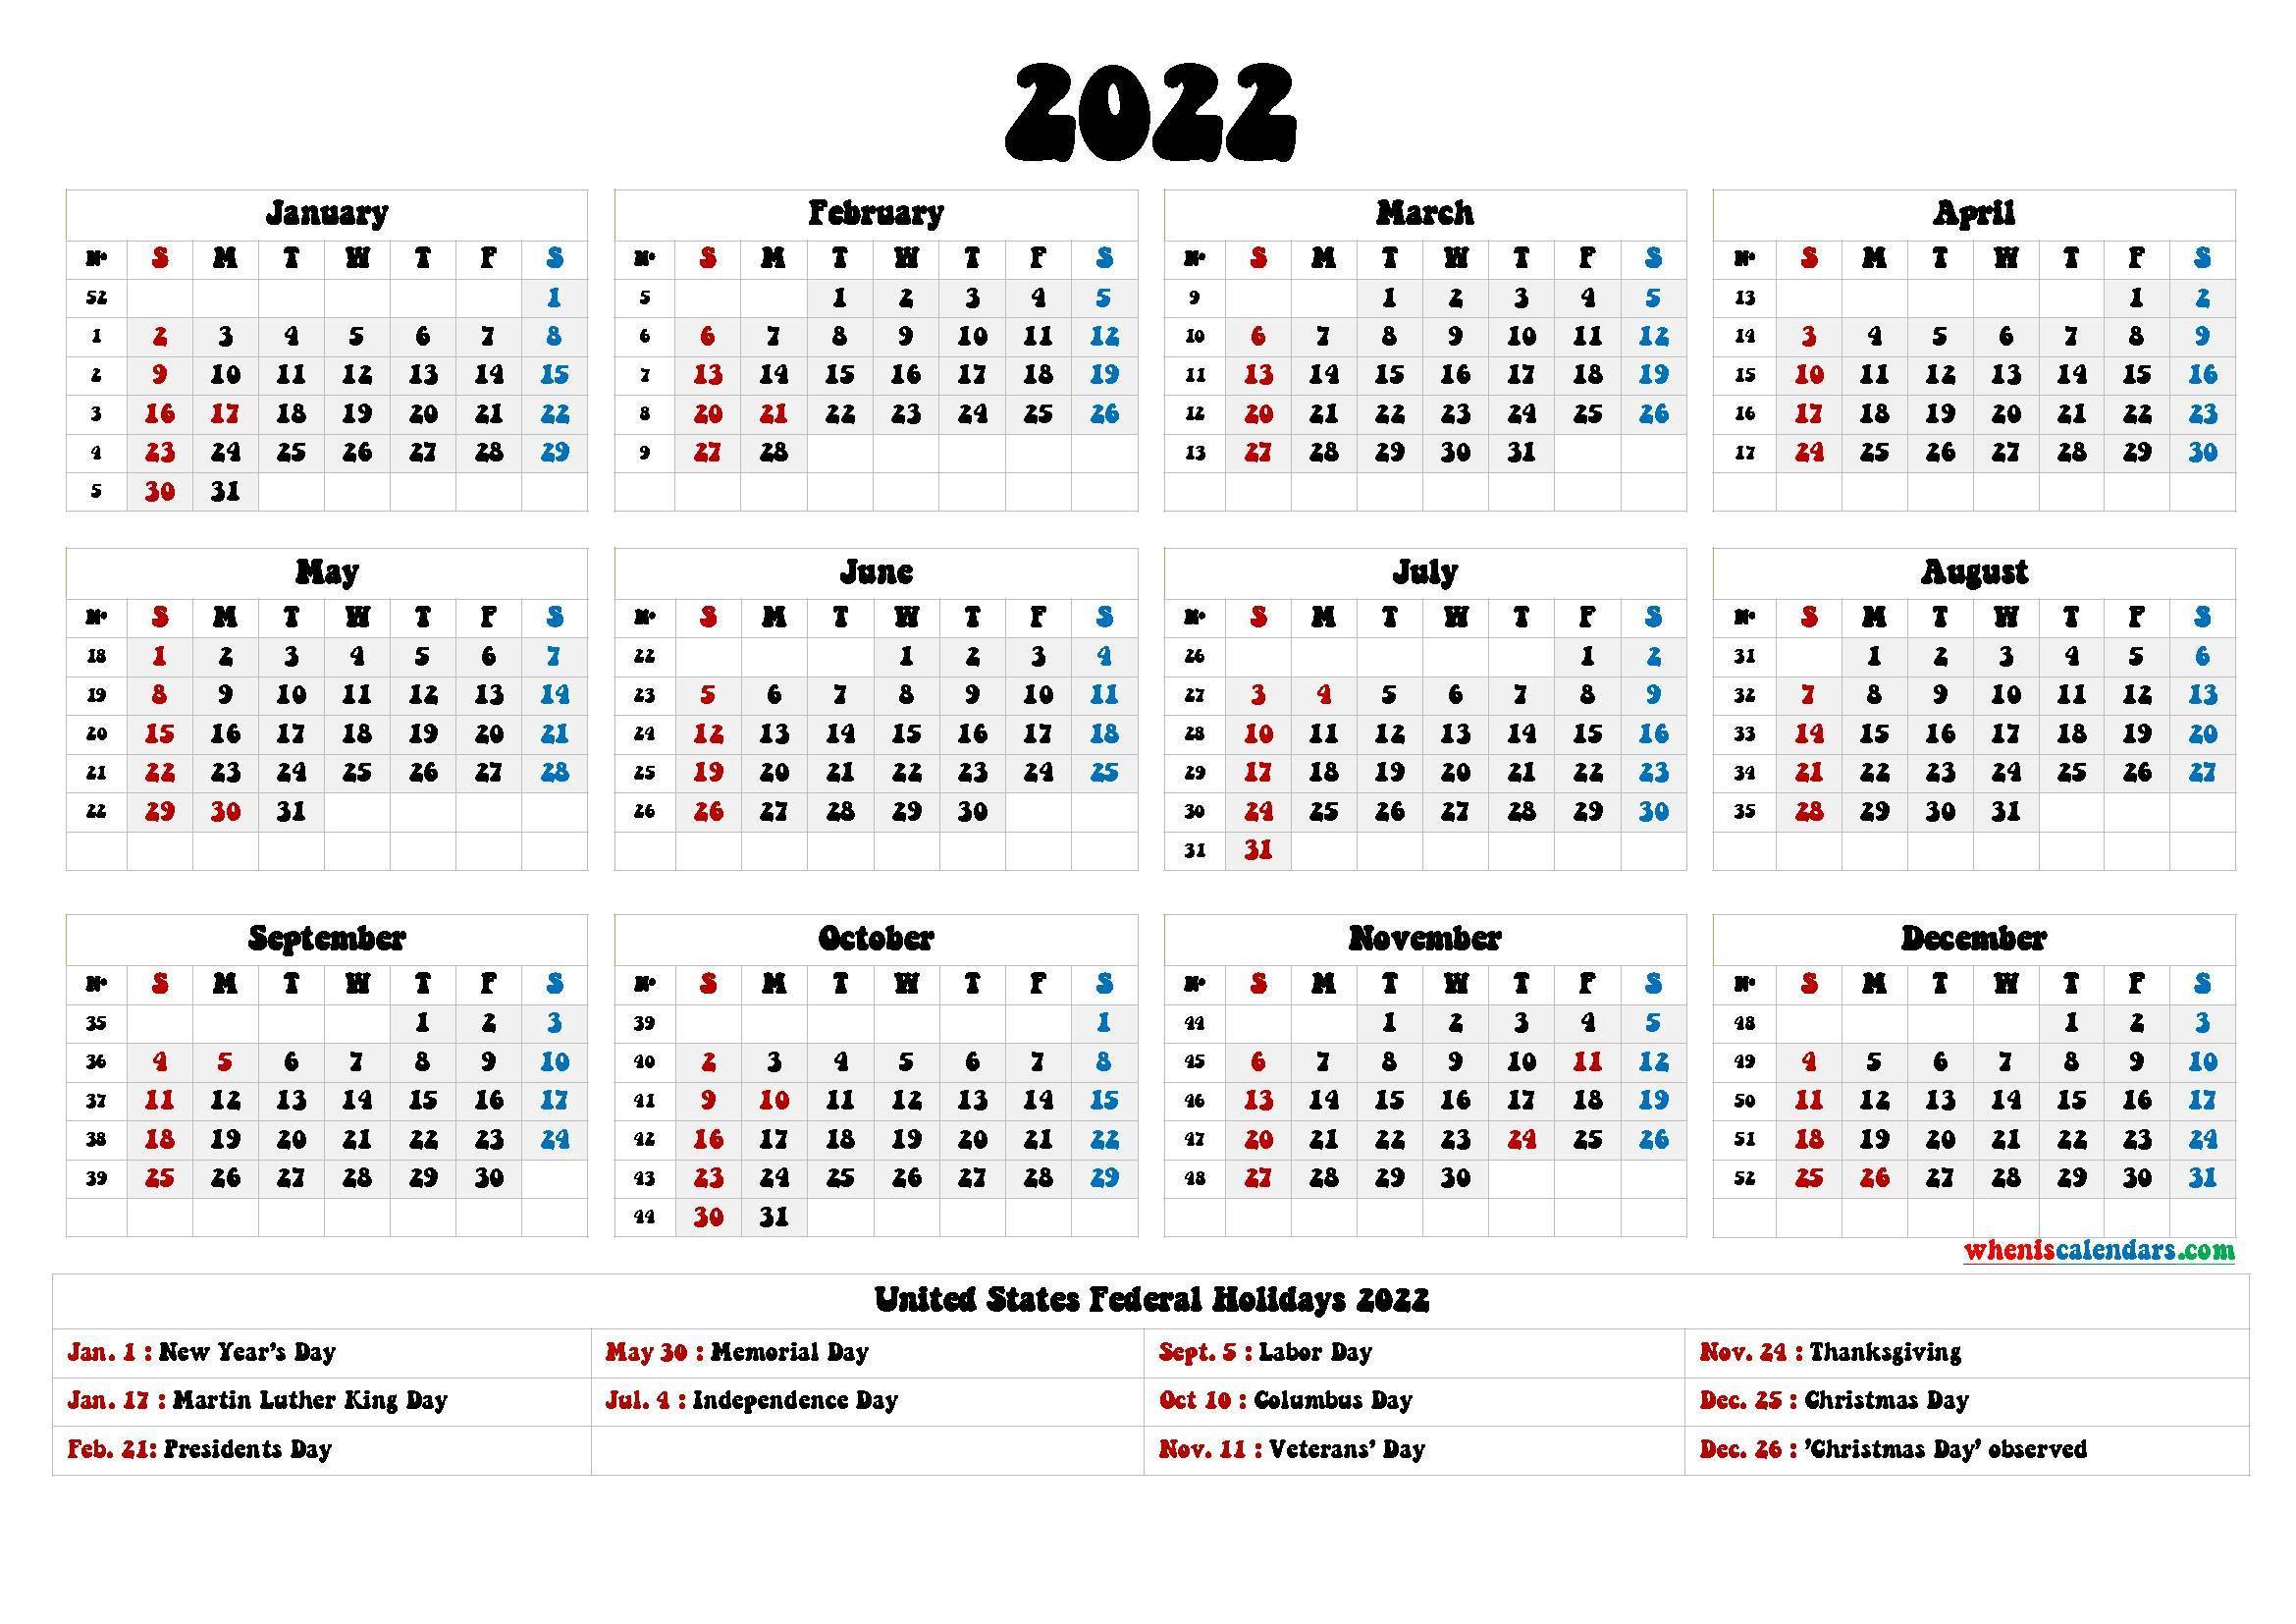 Производственный календарь на 2022 год республики татарстан.